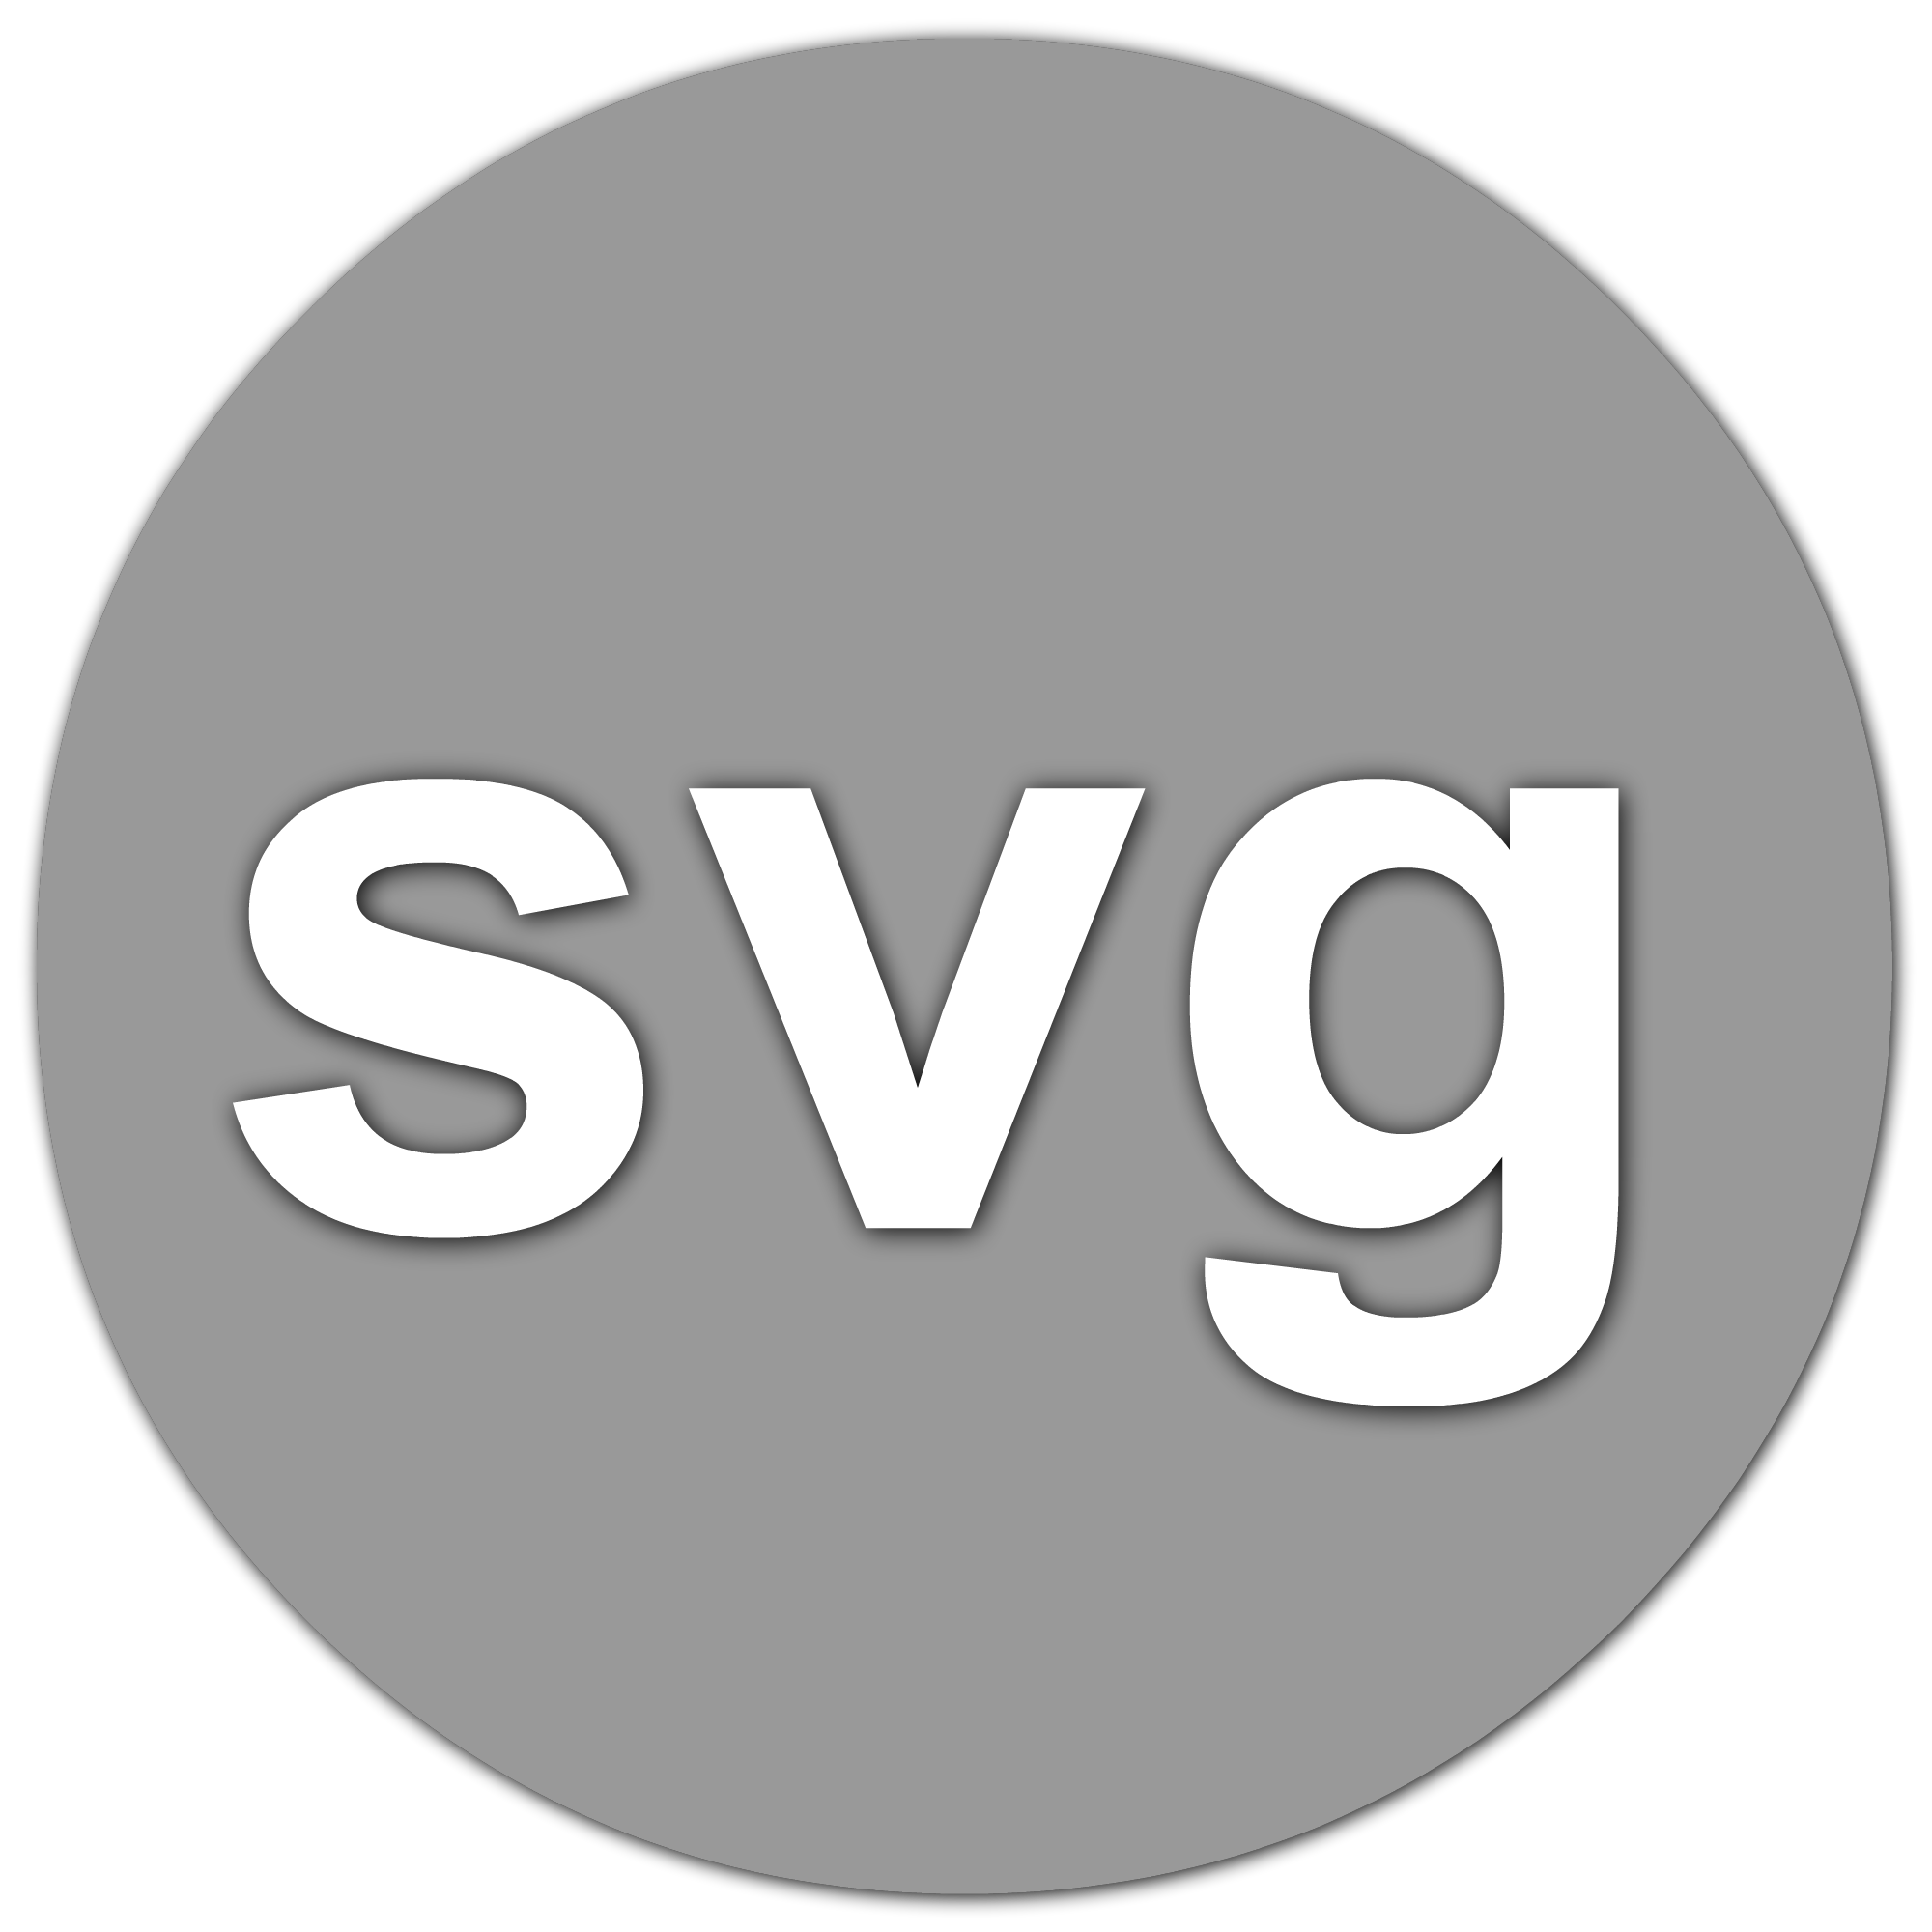 Svg файл. Изображения в формате svg. Svg фото. Расширение svg. Загрузить svg